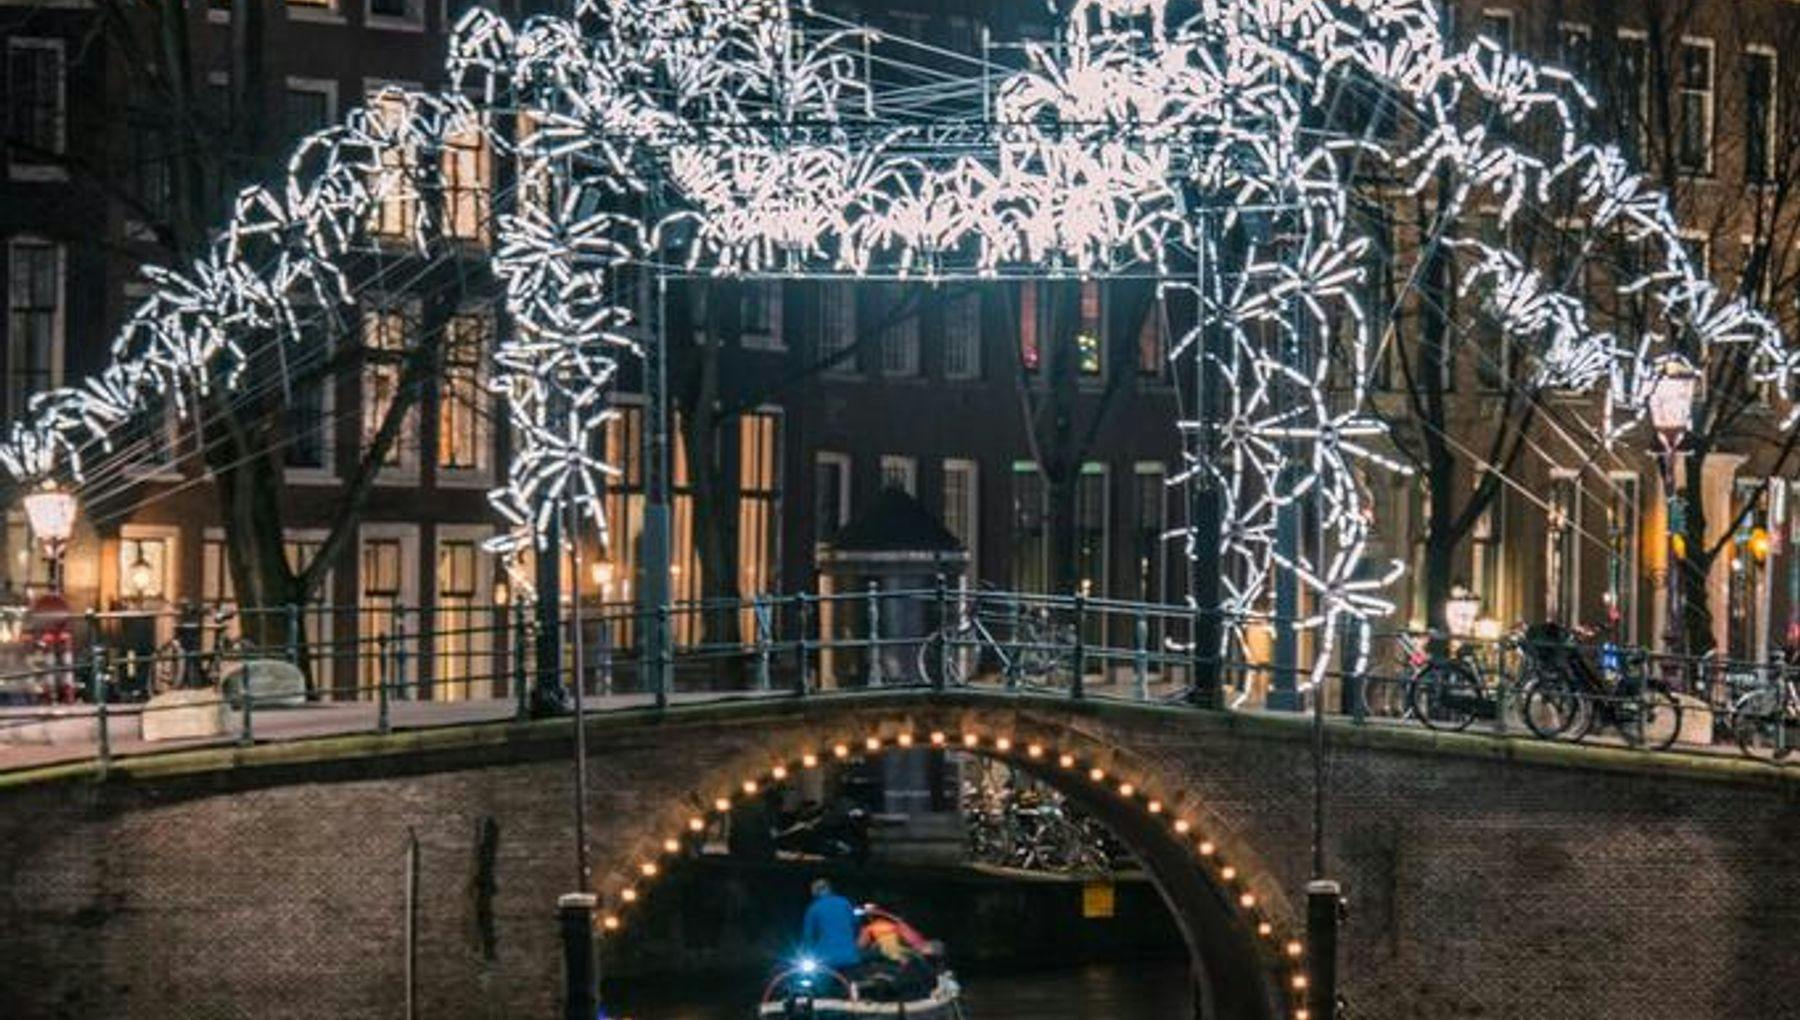 Amsterdam Light Festival - Spider On The Bridge